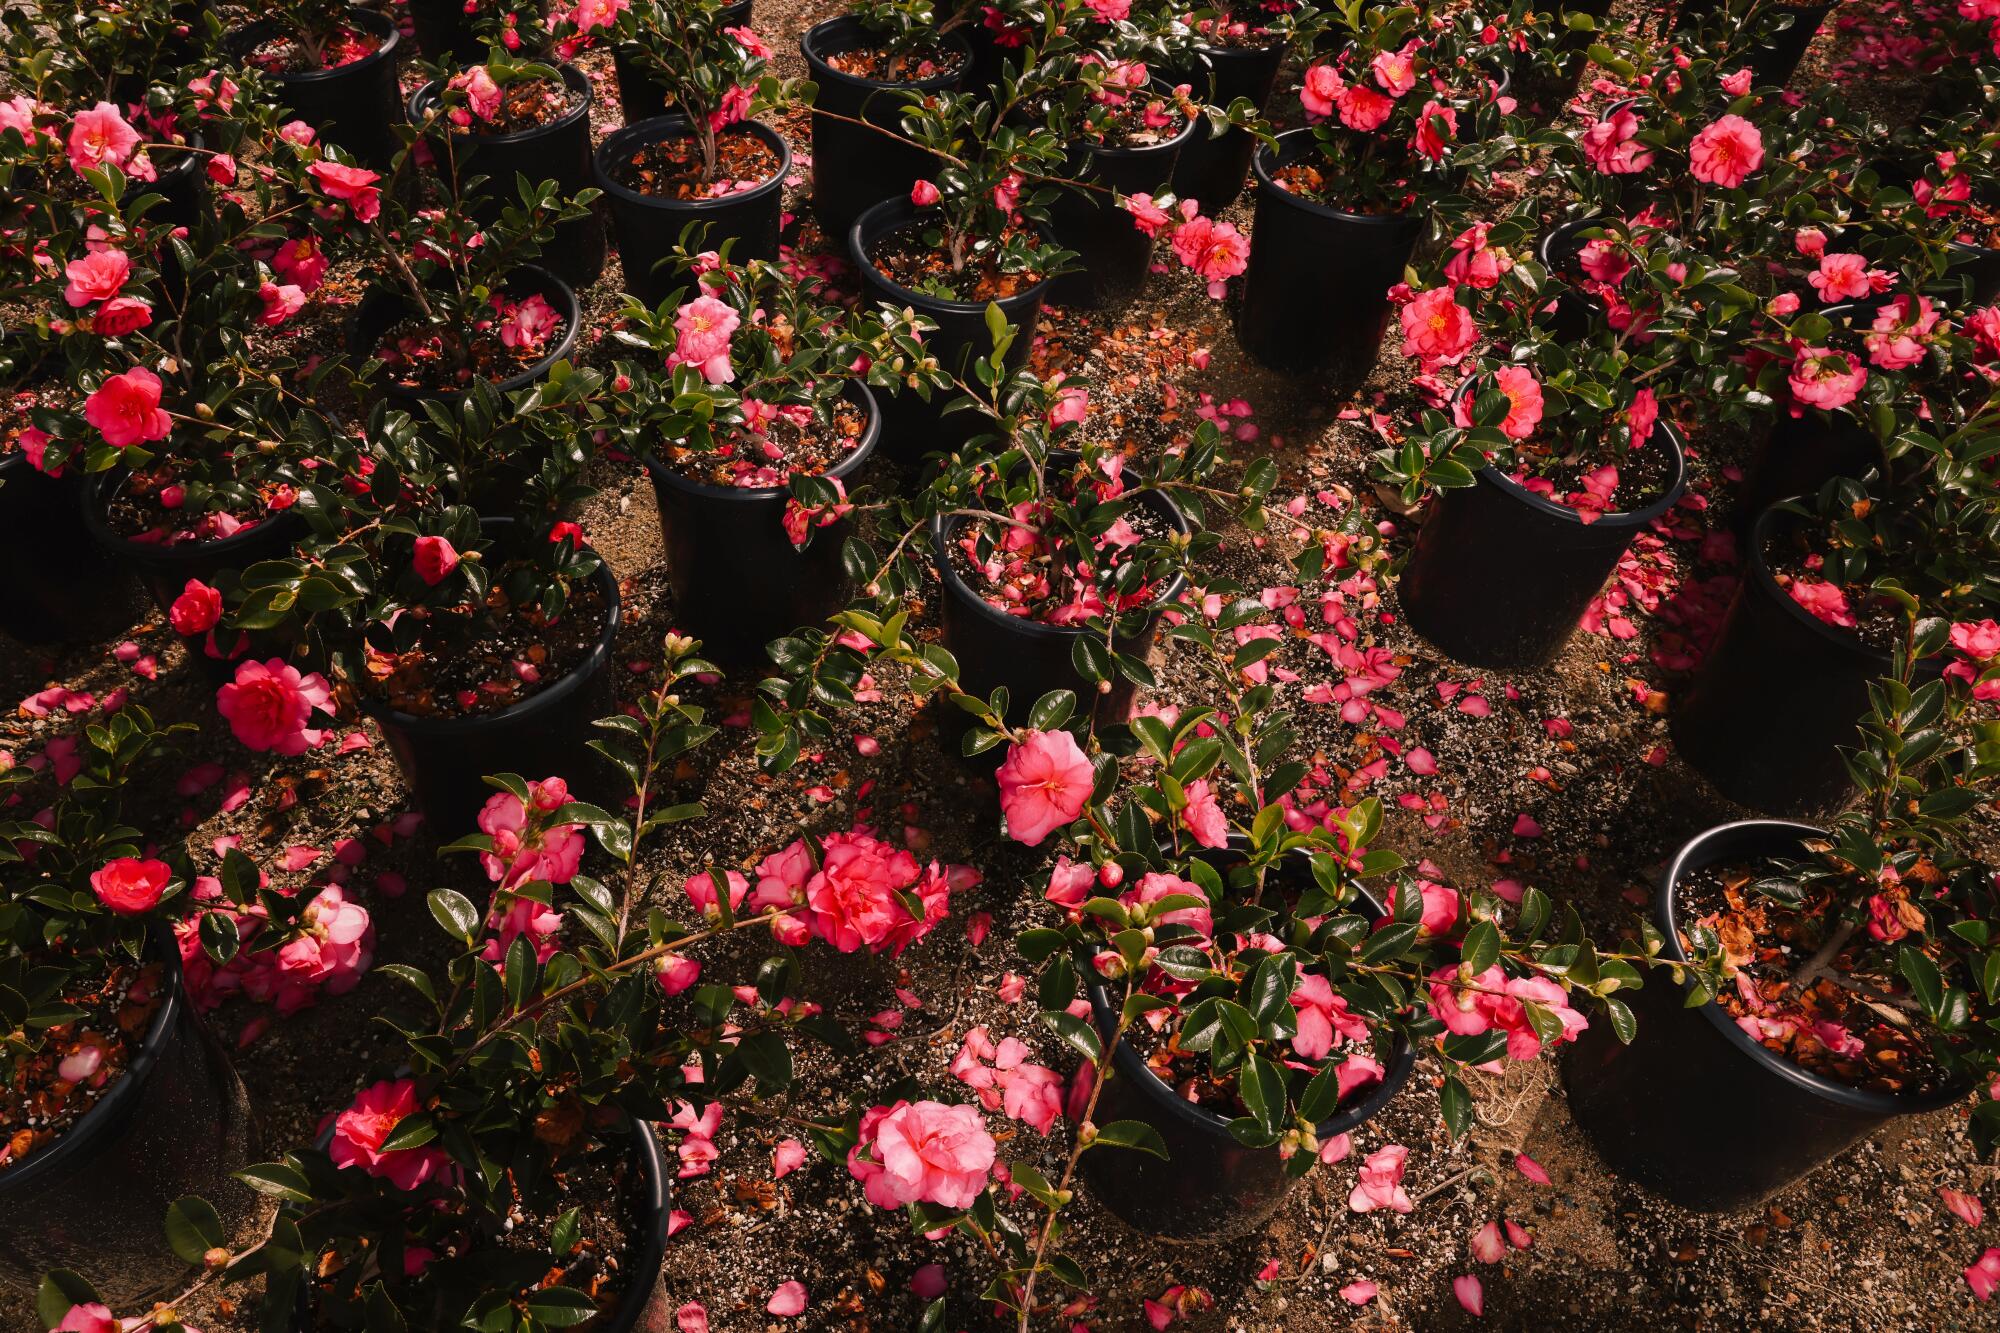 Shishi Gashira camellias bloom in profusion at Nuccio's Nurseries in Altadena.